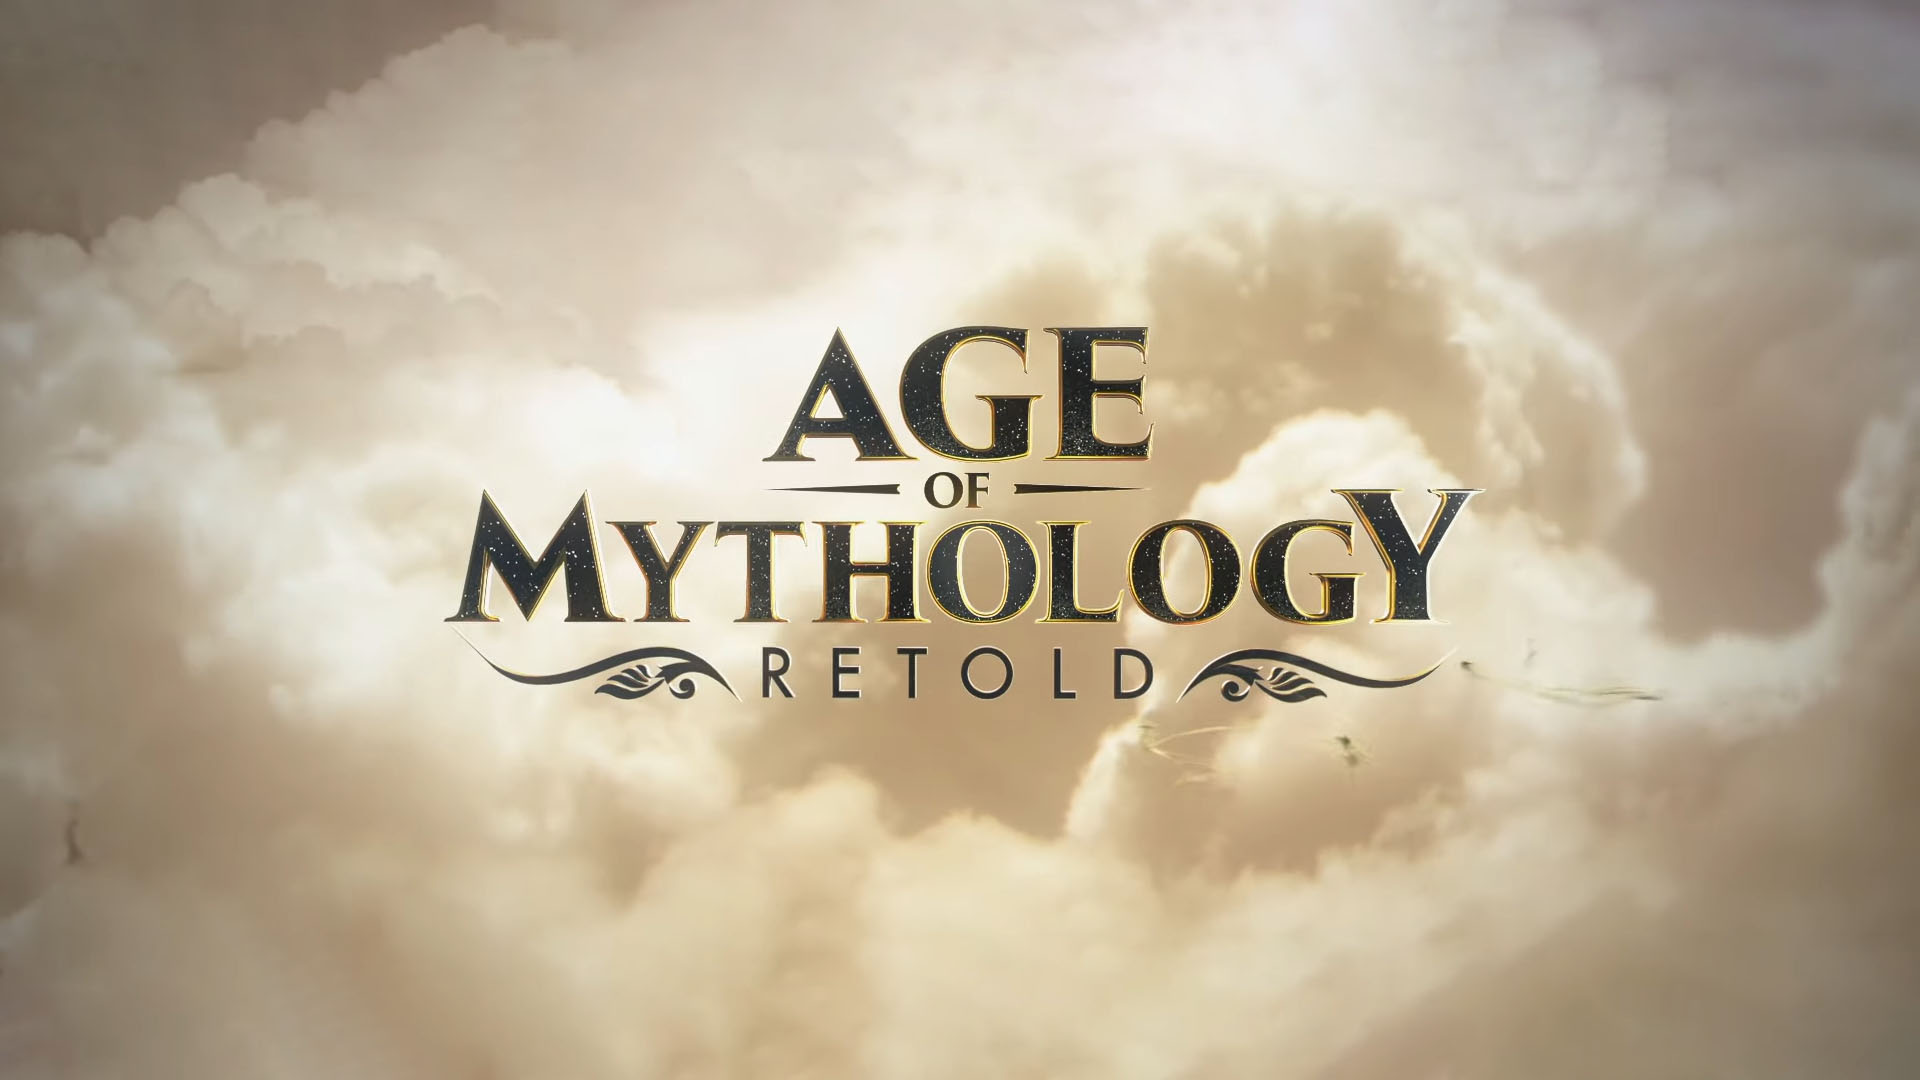 نسخه ریمستر Age of Mythology رسما معرفی شد